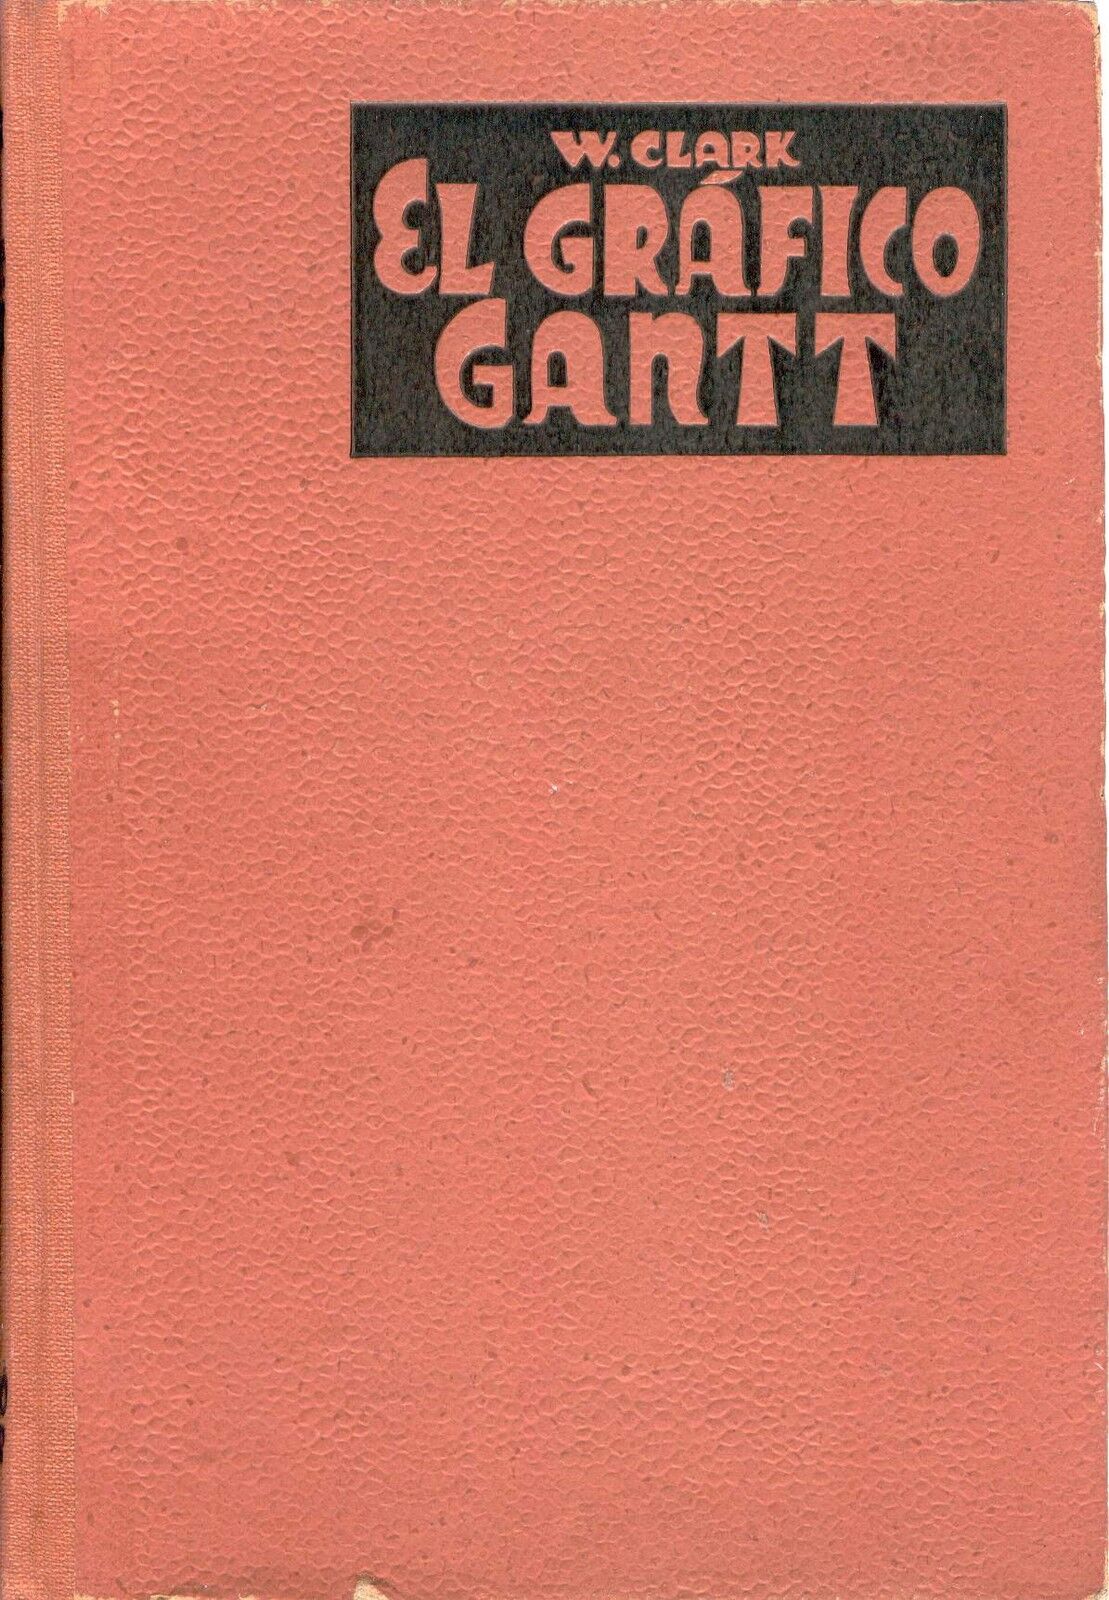 EL GRAFICO GANTT por Wallace Clark. Edición de 1944